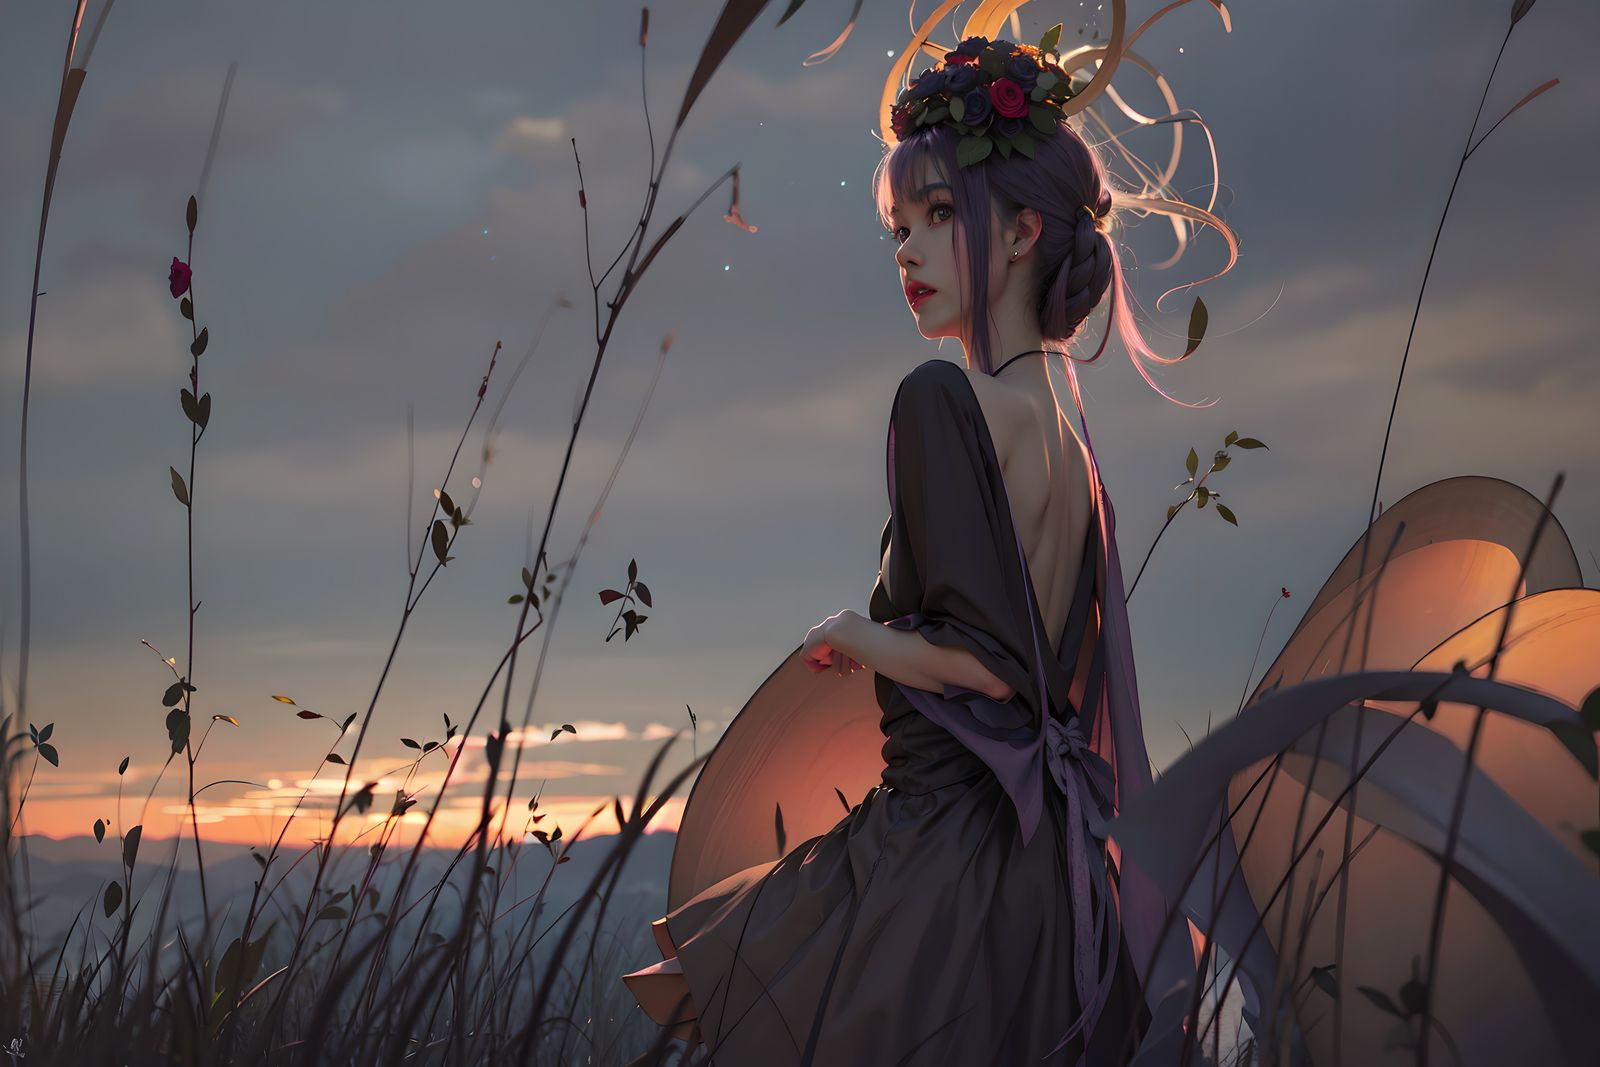 日落之下，女孩独自站在电线杆旁，穿着漂亮的裙子，头戴花饰，身边长满荆棘的树木。插画图片壁纸